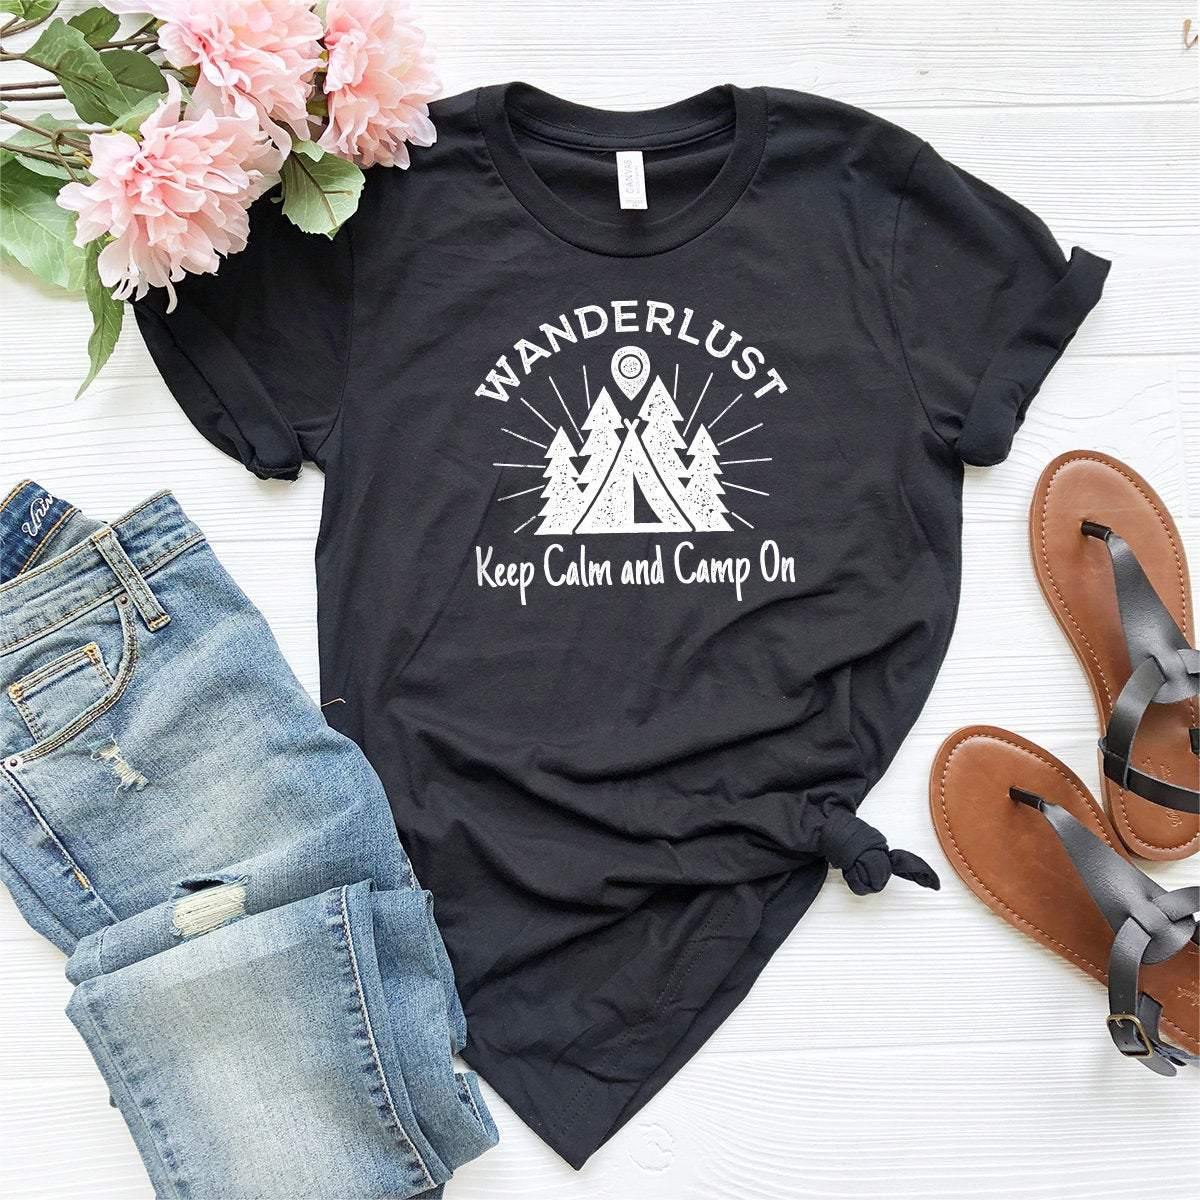 Wanderlust Shirt,Camping Shirt,Hiking Shirt,Adventure Shirt,Mountain Shirt,Climbing Shirt,Travel Shirt,Camper Shirt,Outdoor Shirt - Fastdeliverytees.com